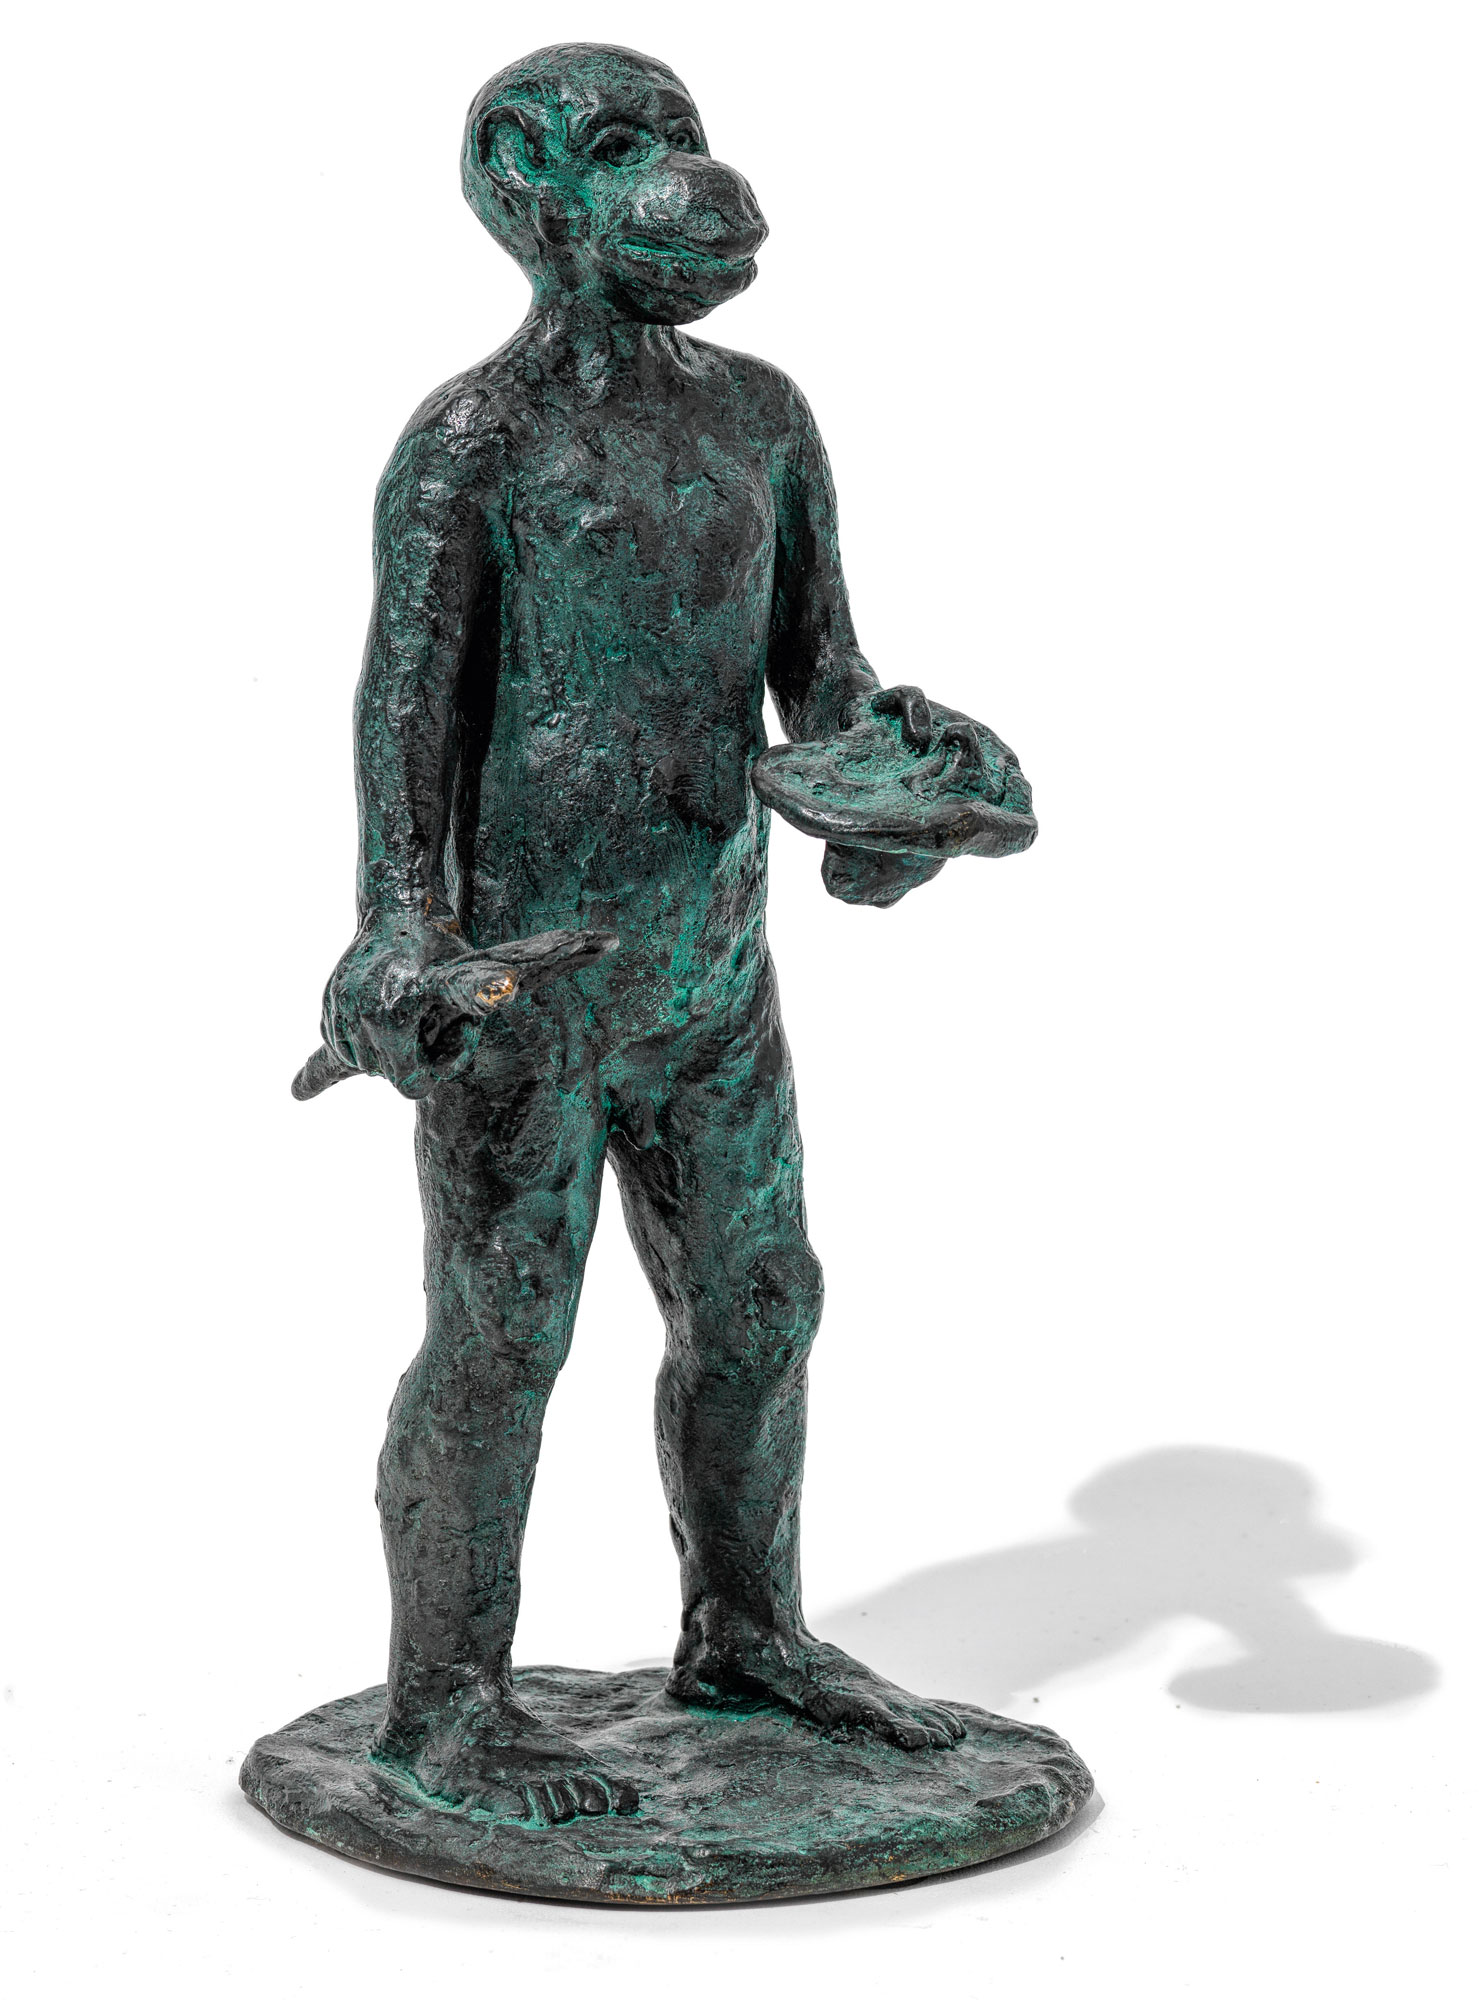 Skulptur "Malerstamm" (2002), Bronze von Jörg Immendorff